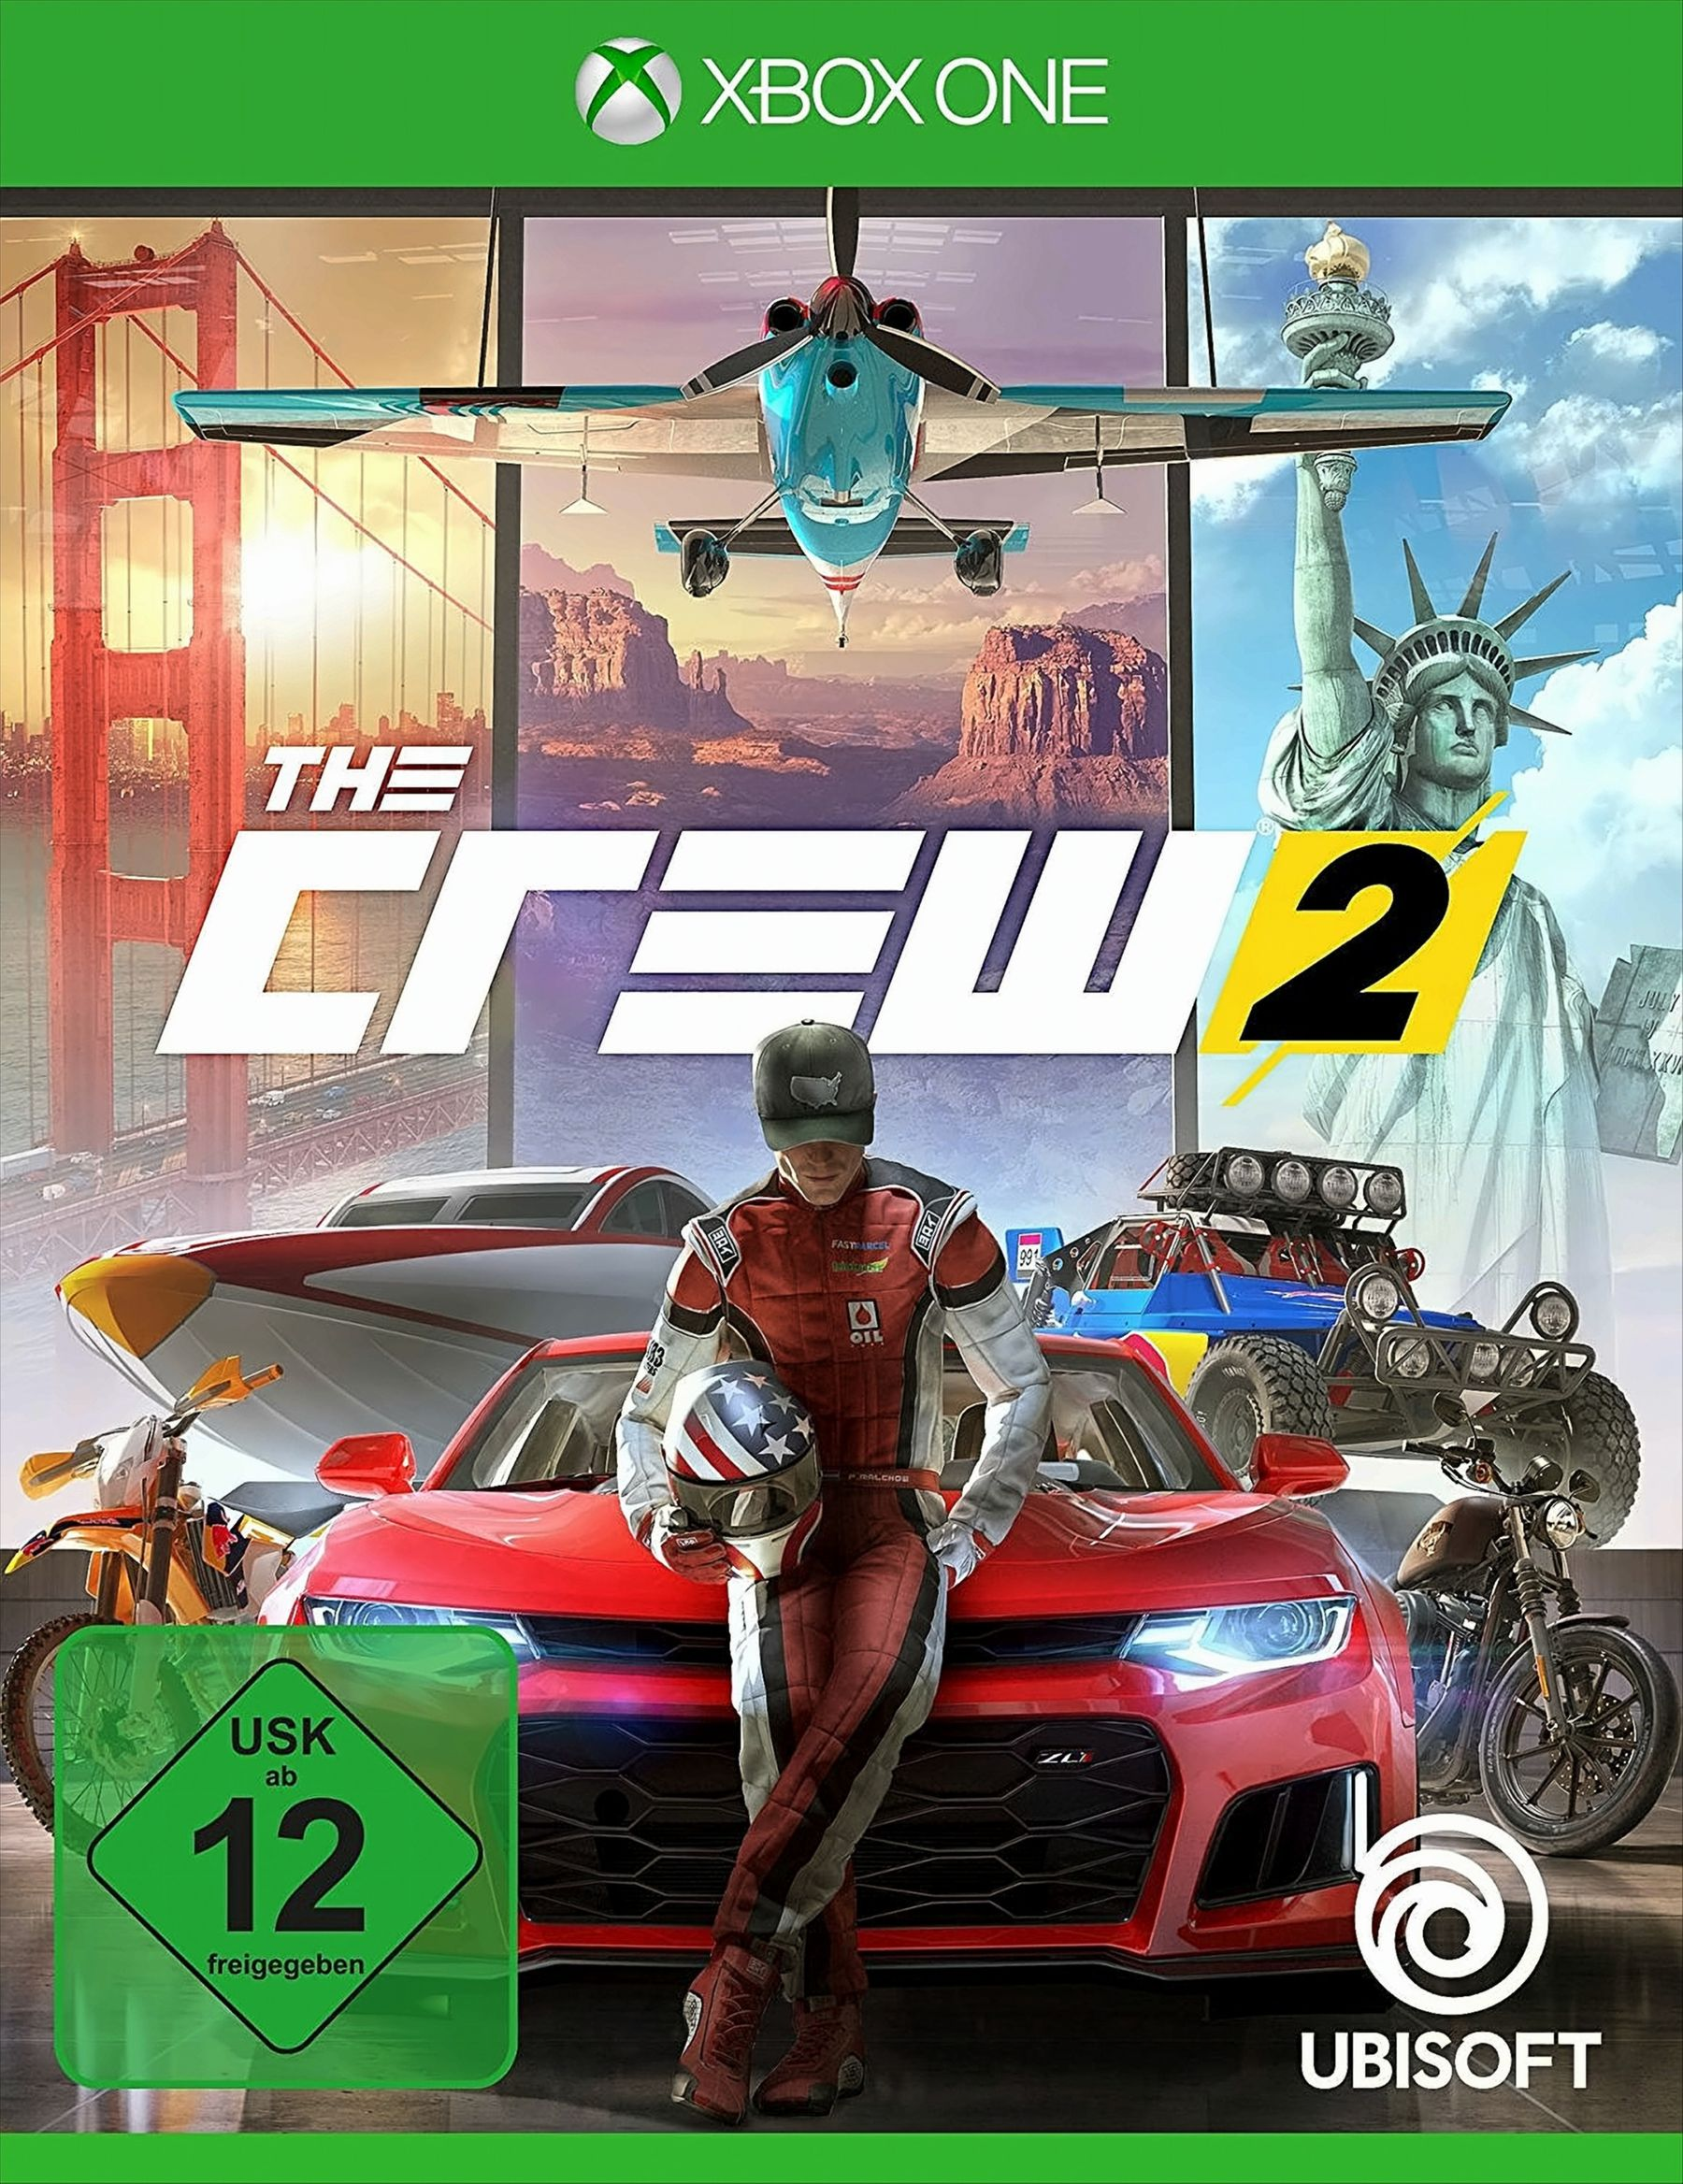 The [Xbox One] 2 Crew -